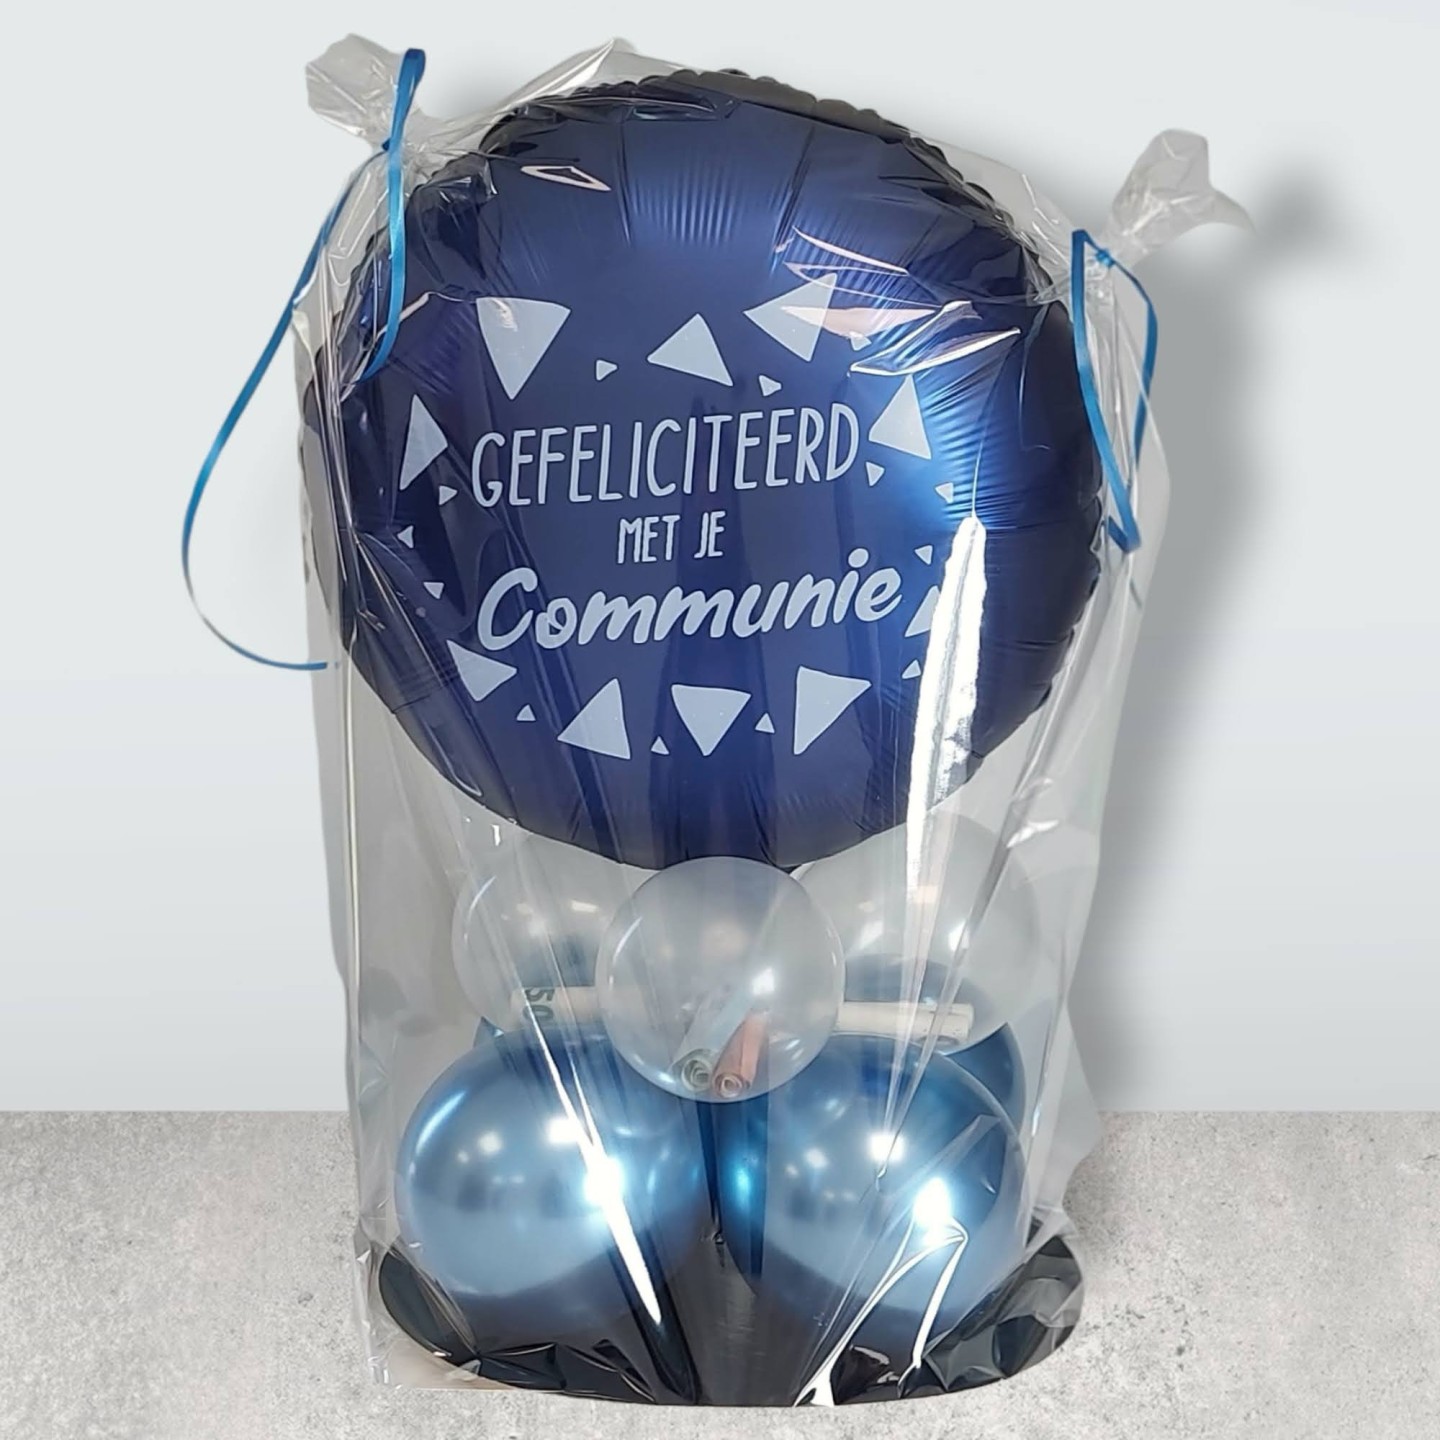 Bloedbad is er Bedenk Folieballon communie blauw 45 cm | Jokershop.be